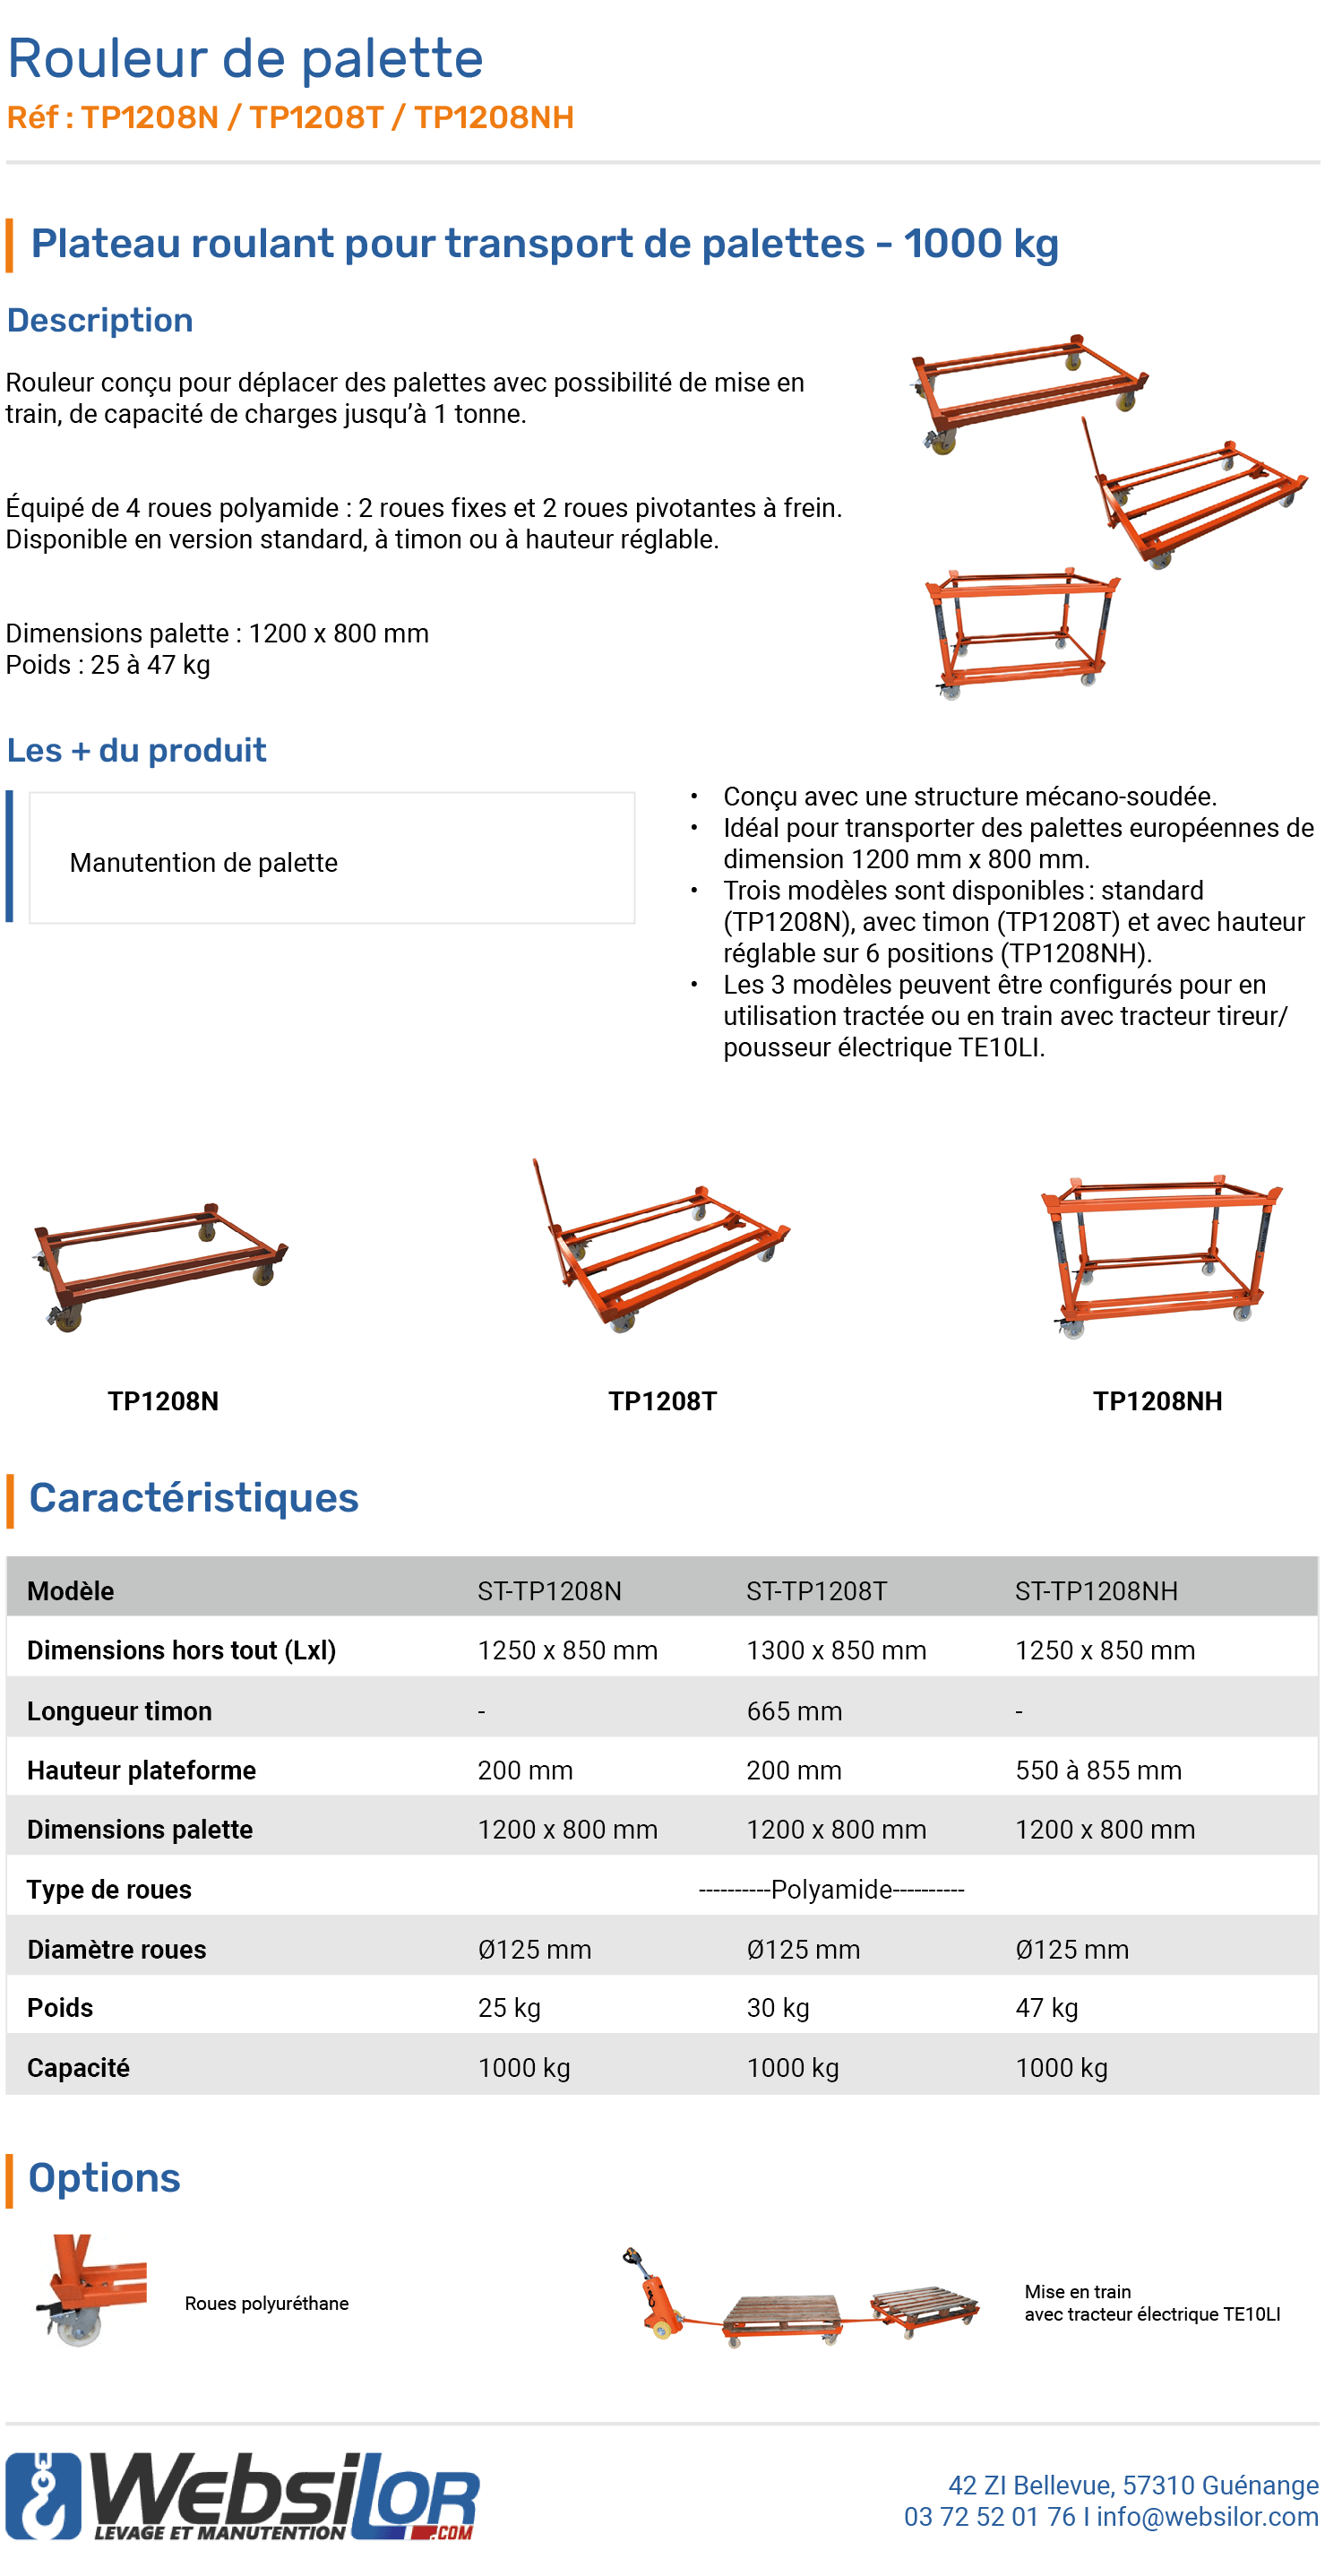 Informations technique de Rouleur de palette 1000 kg